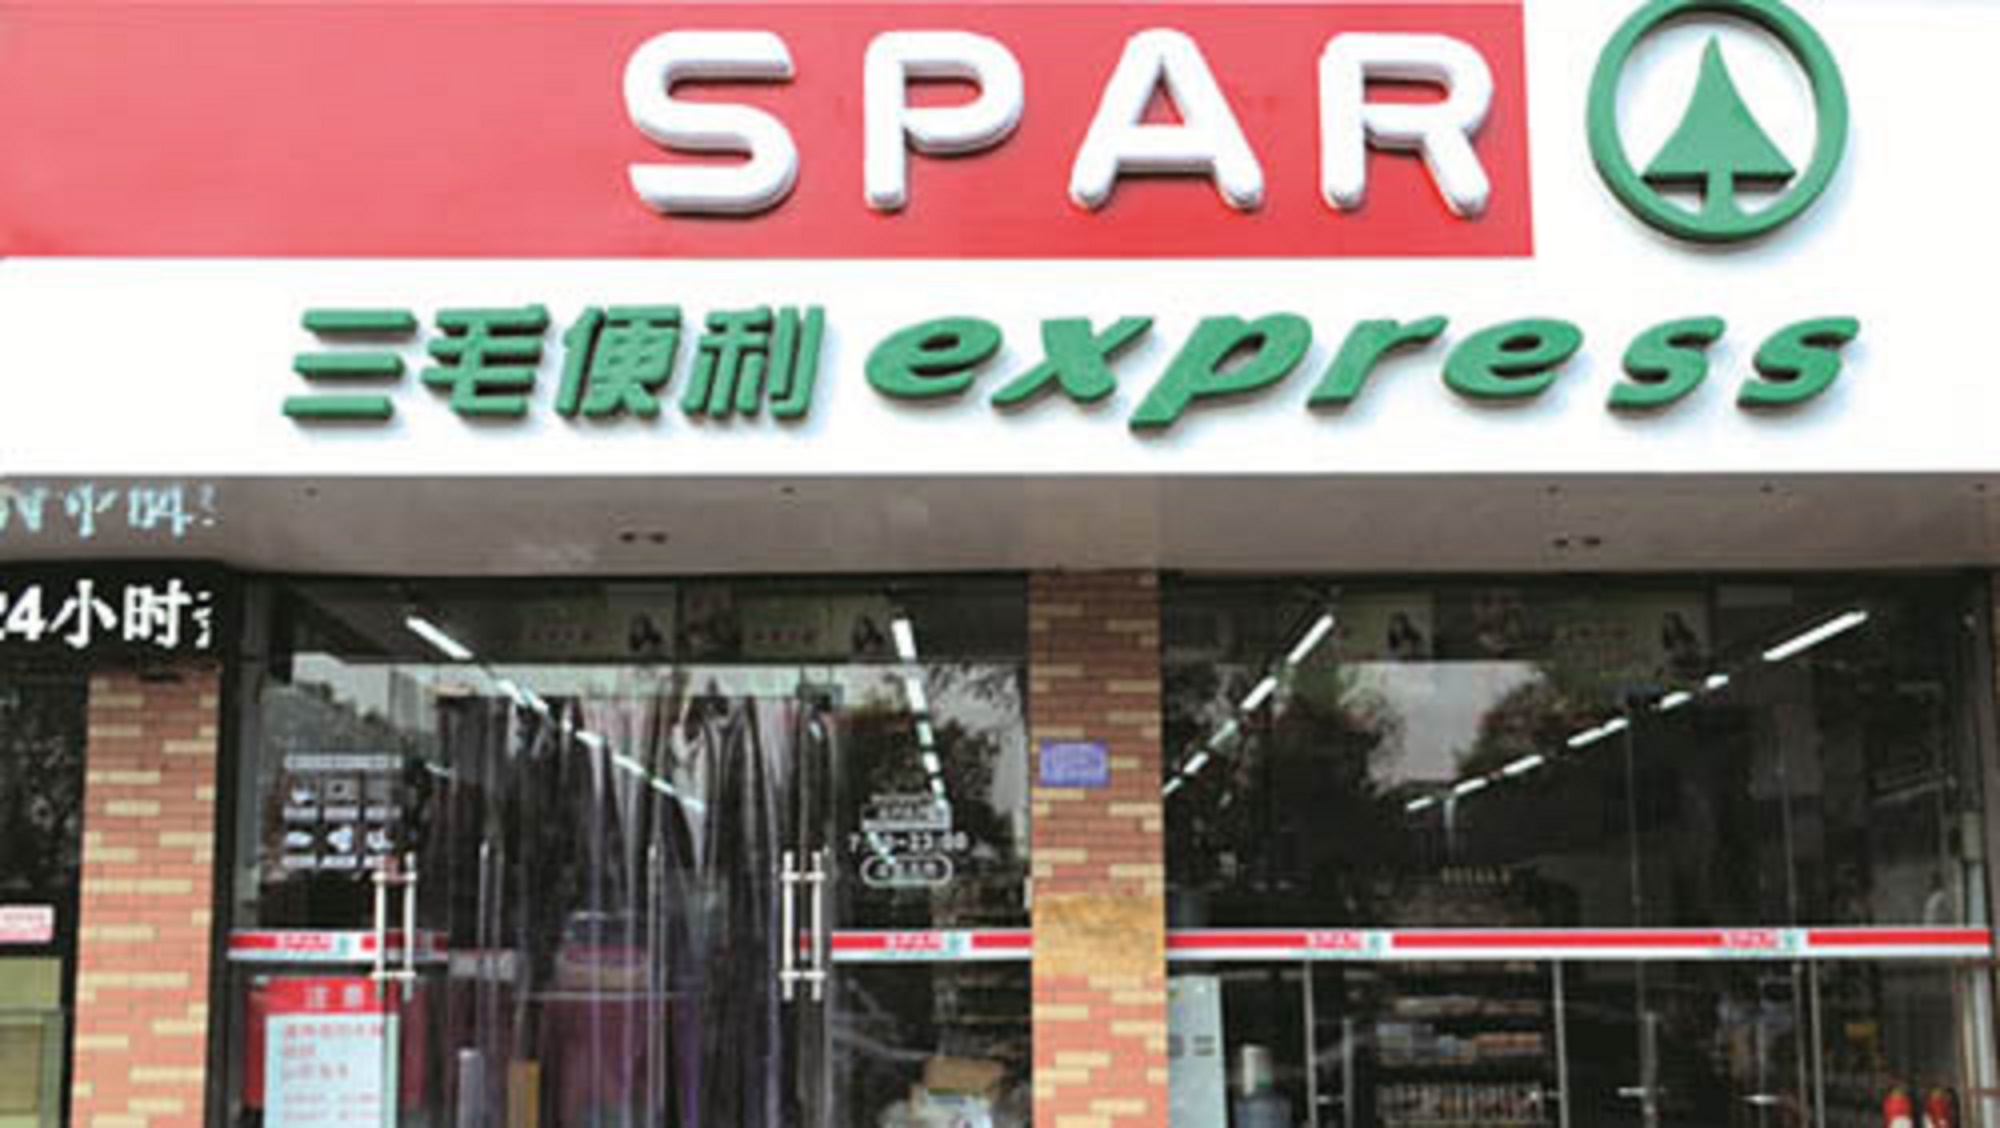 SPAR Express entrance with SPAR logo